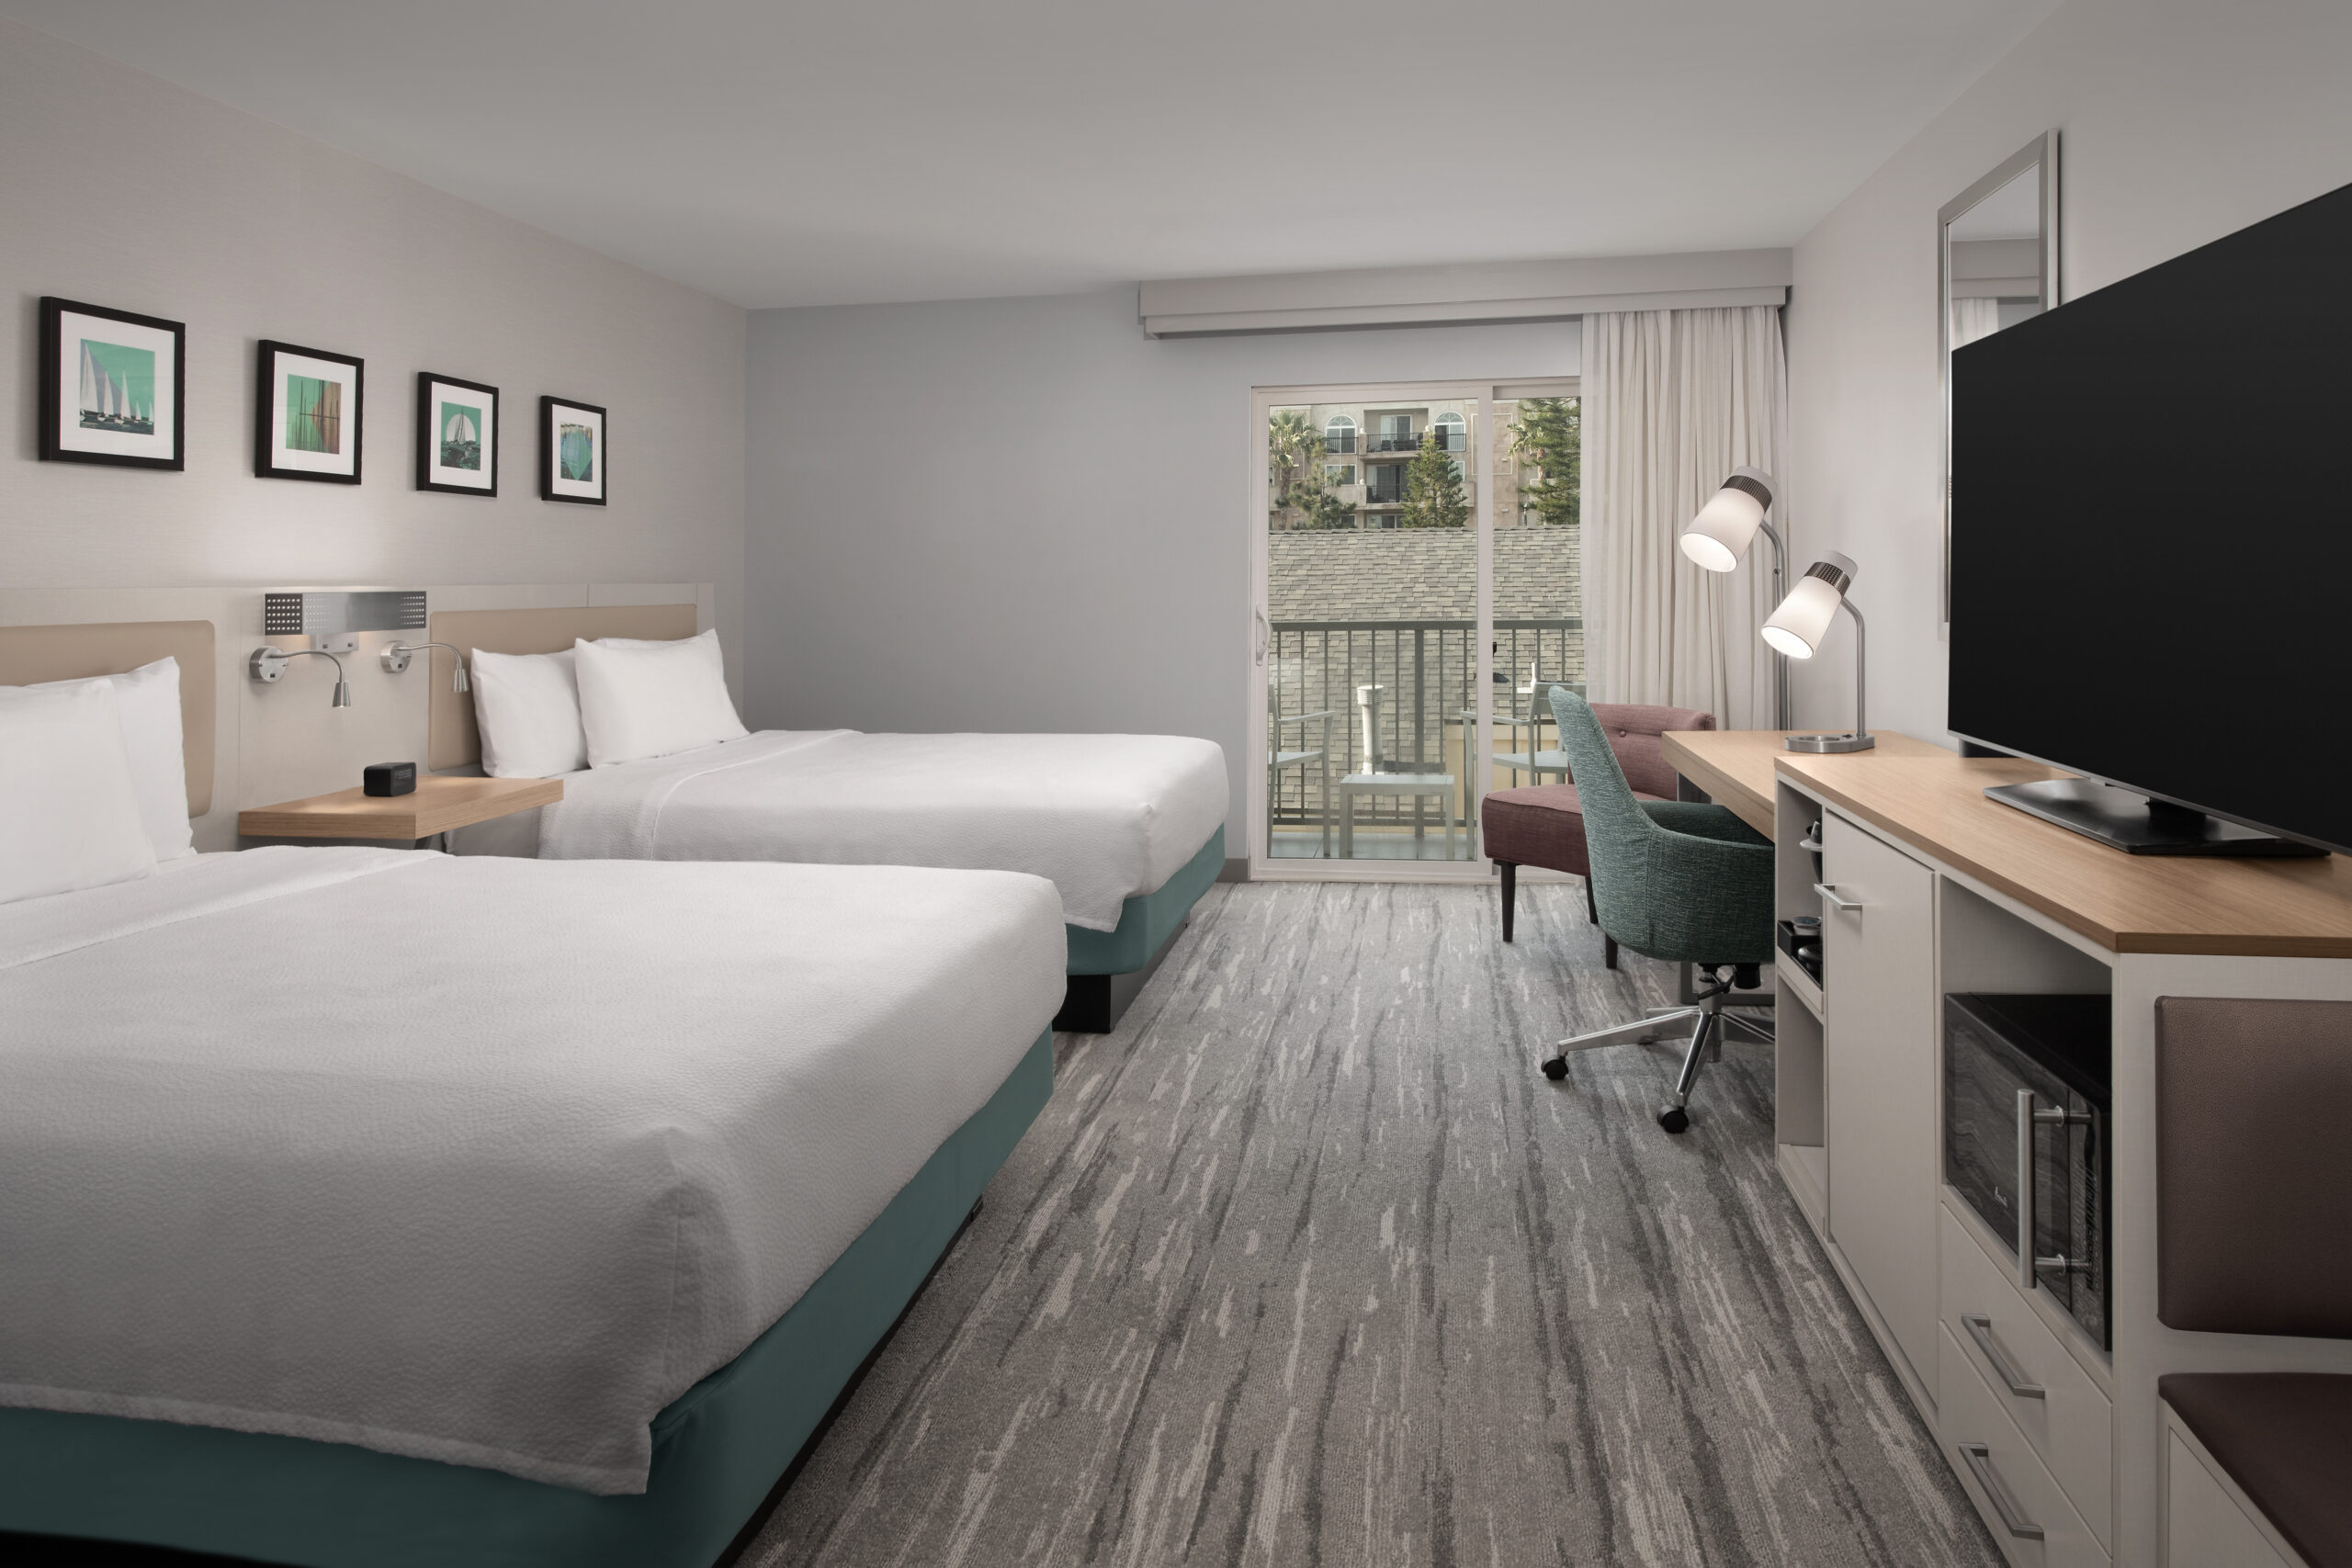 Hilton Garden Inn hotel bedroom renovated